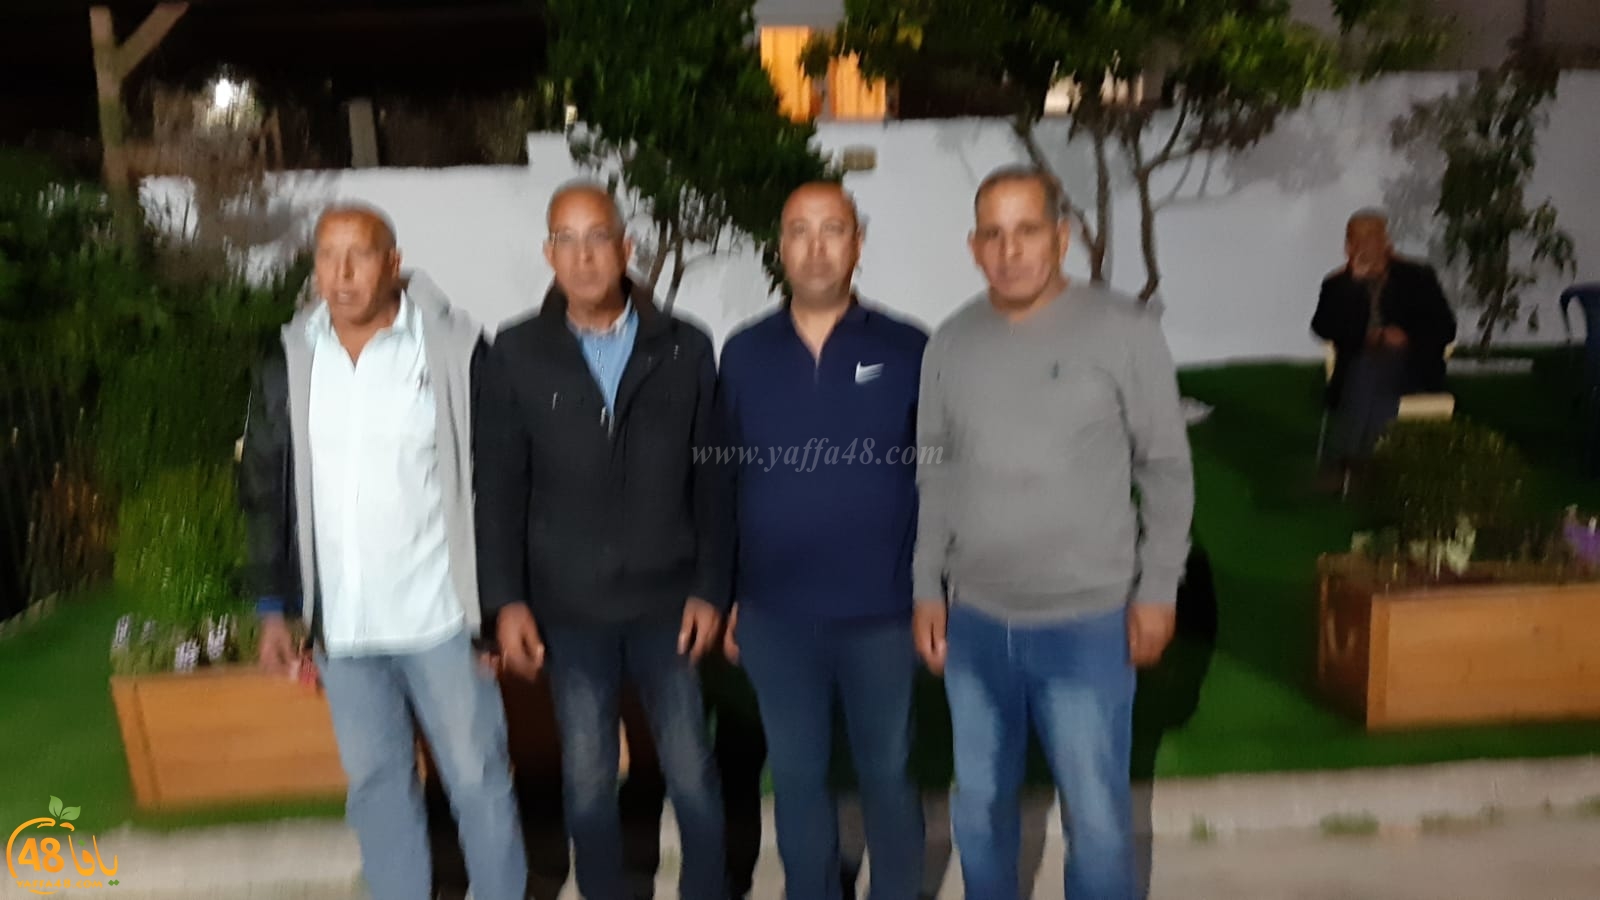 اللد: عقد راية الصلح بين عائلتي أبو صيام و الزبارقة